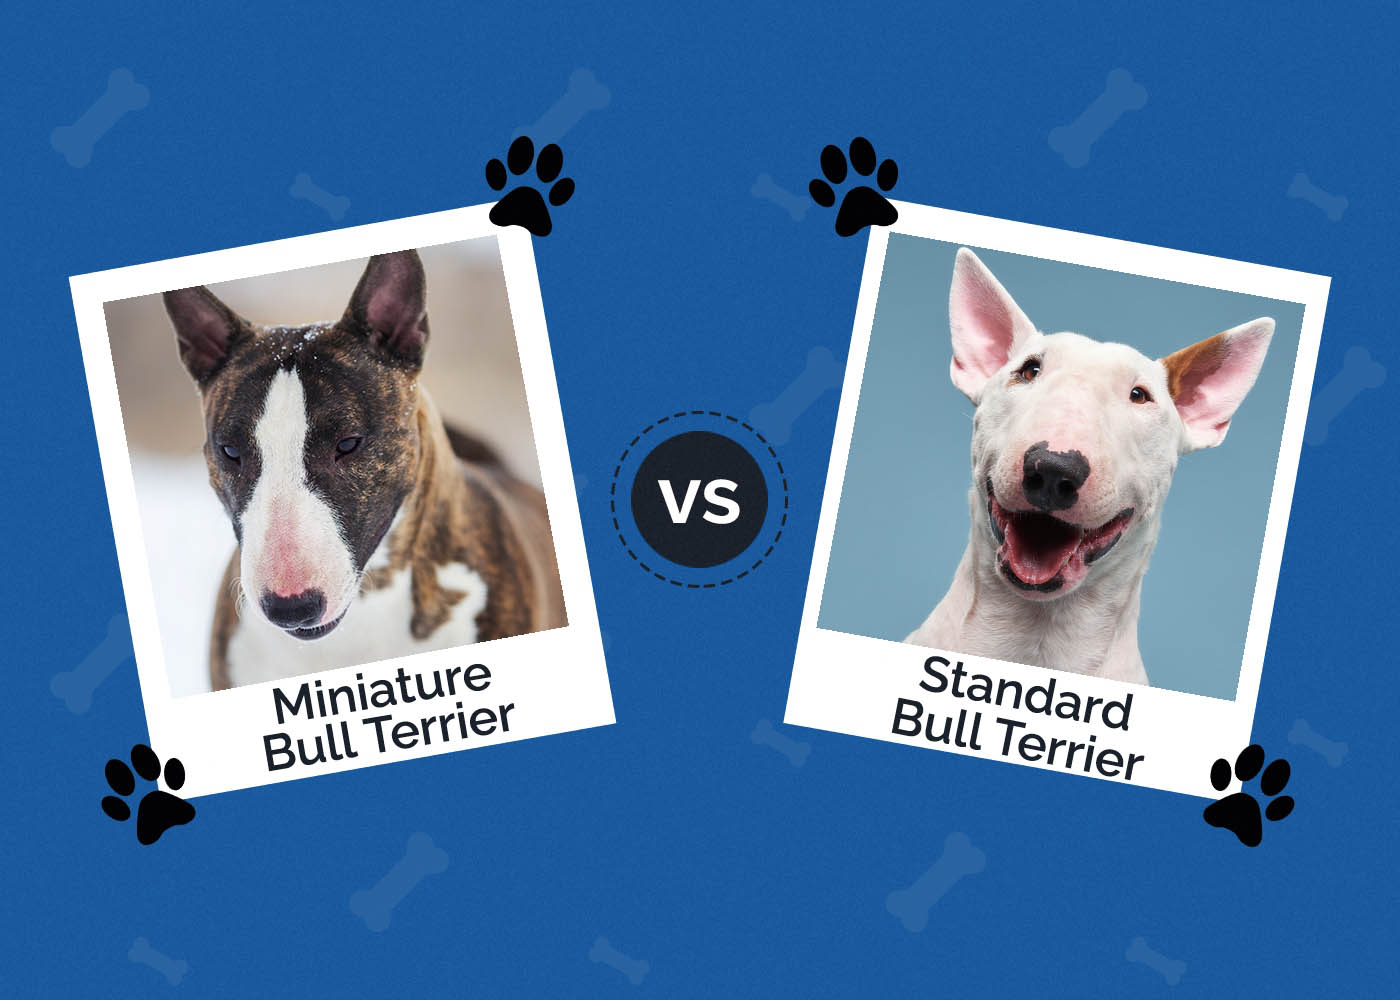 Miniature Bull Terrier vs Standard Bull Terrier